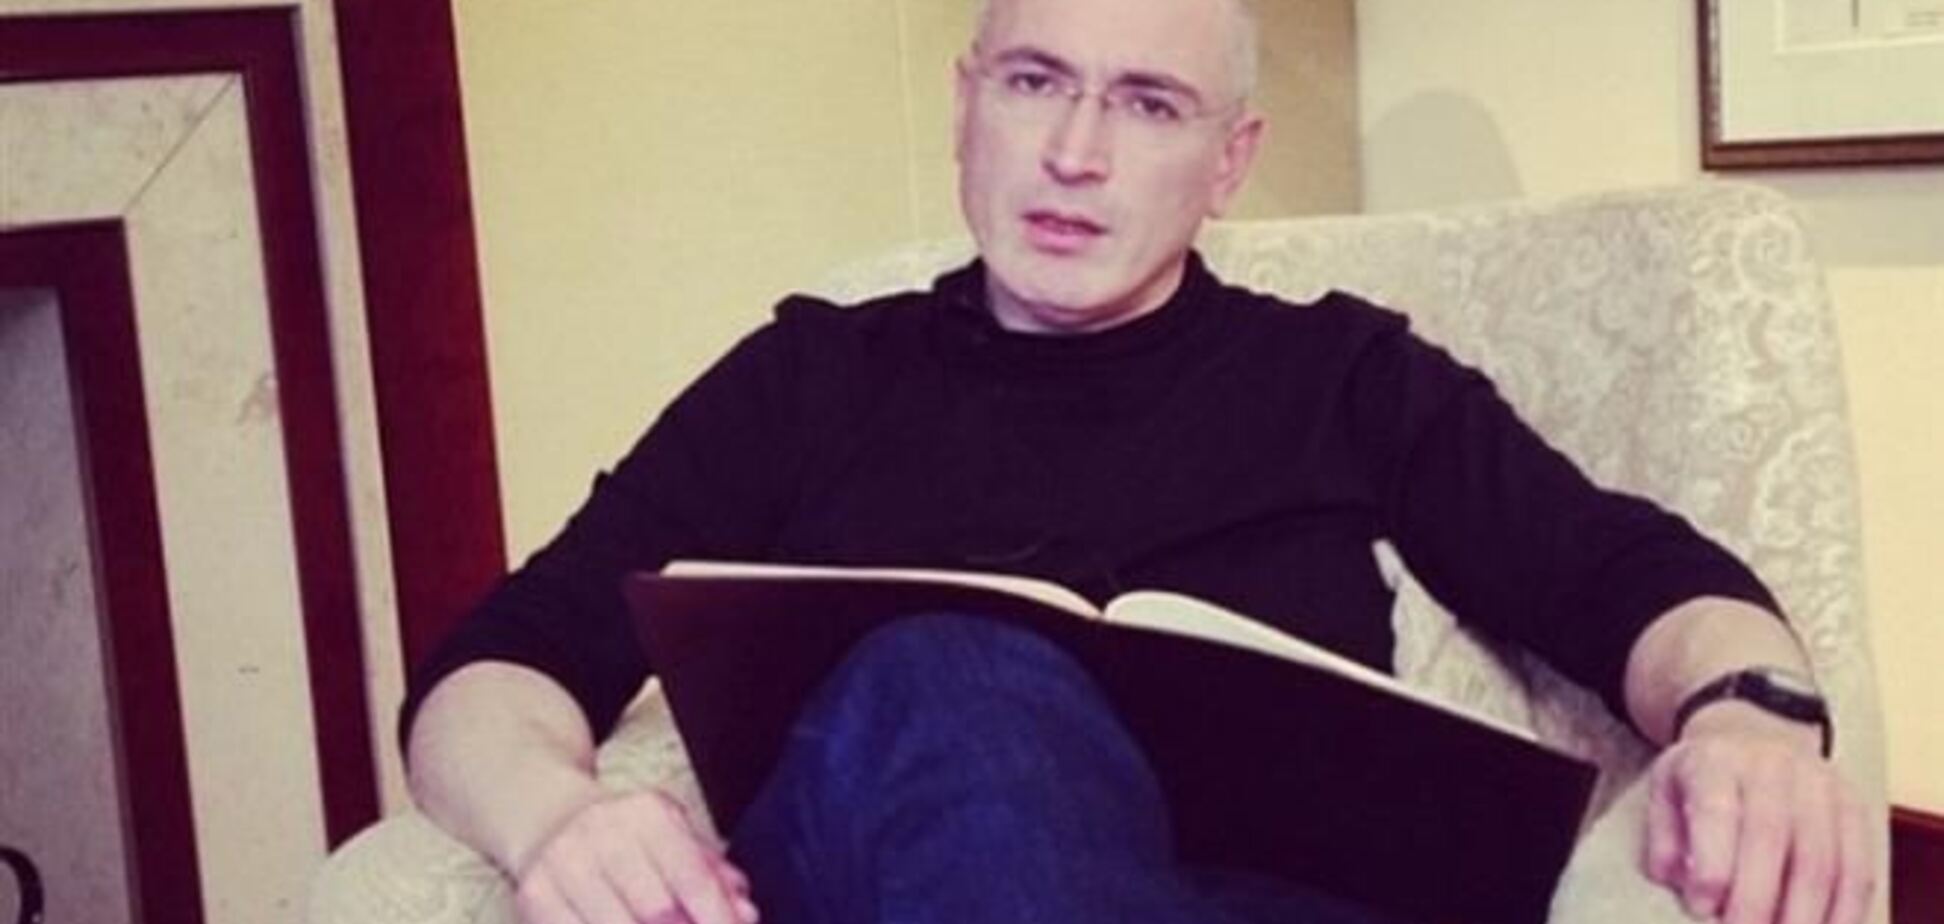 Ходорковский приехал в Швейцарию